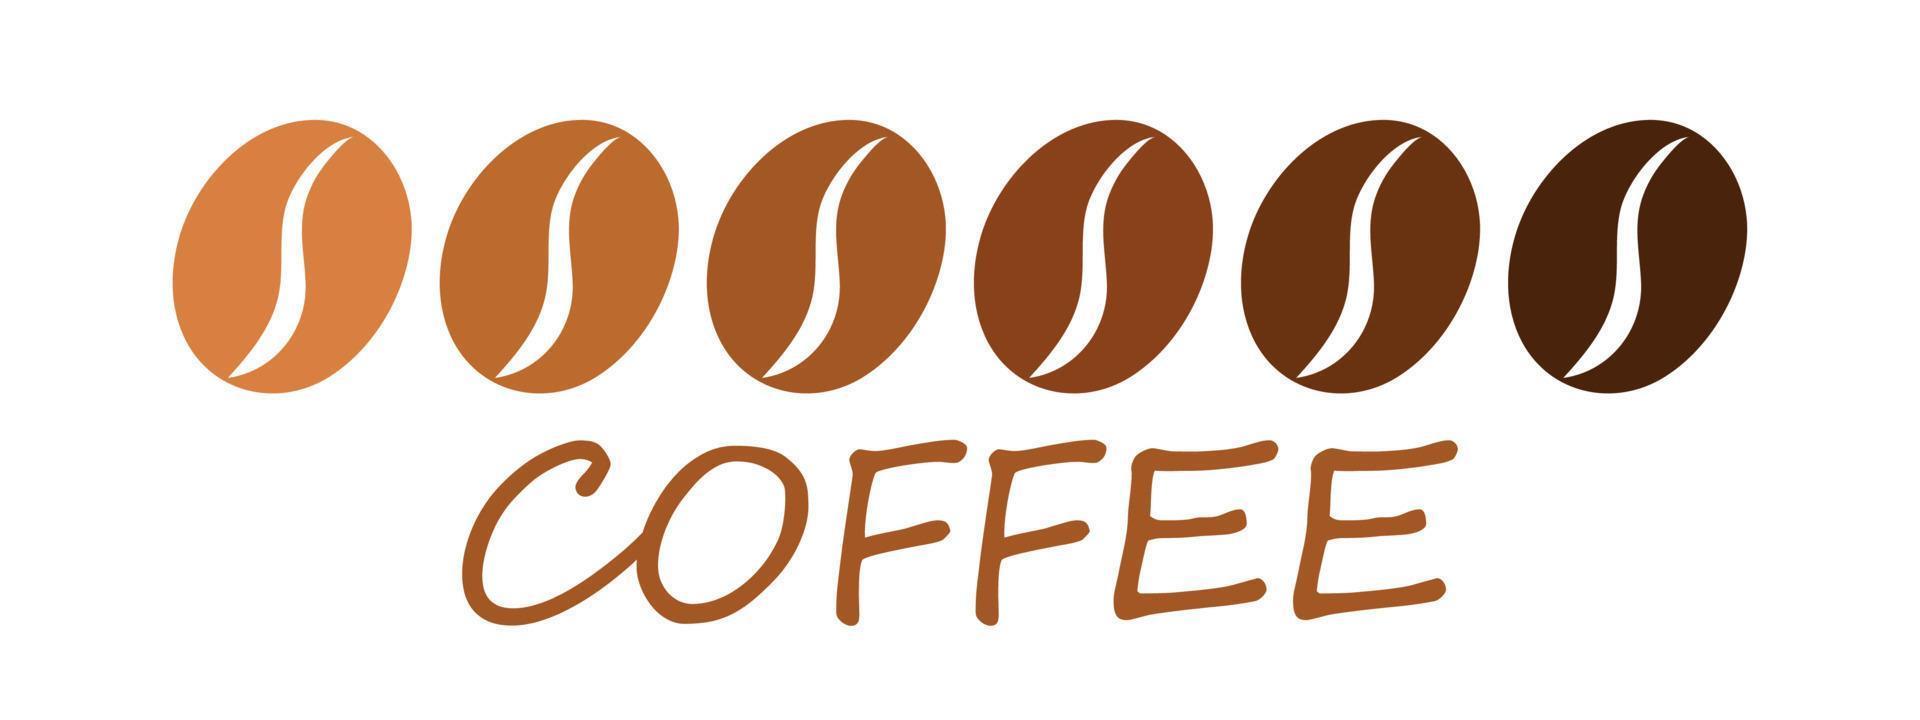 Plantilla de ilustración de vector de icono de grano de café